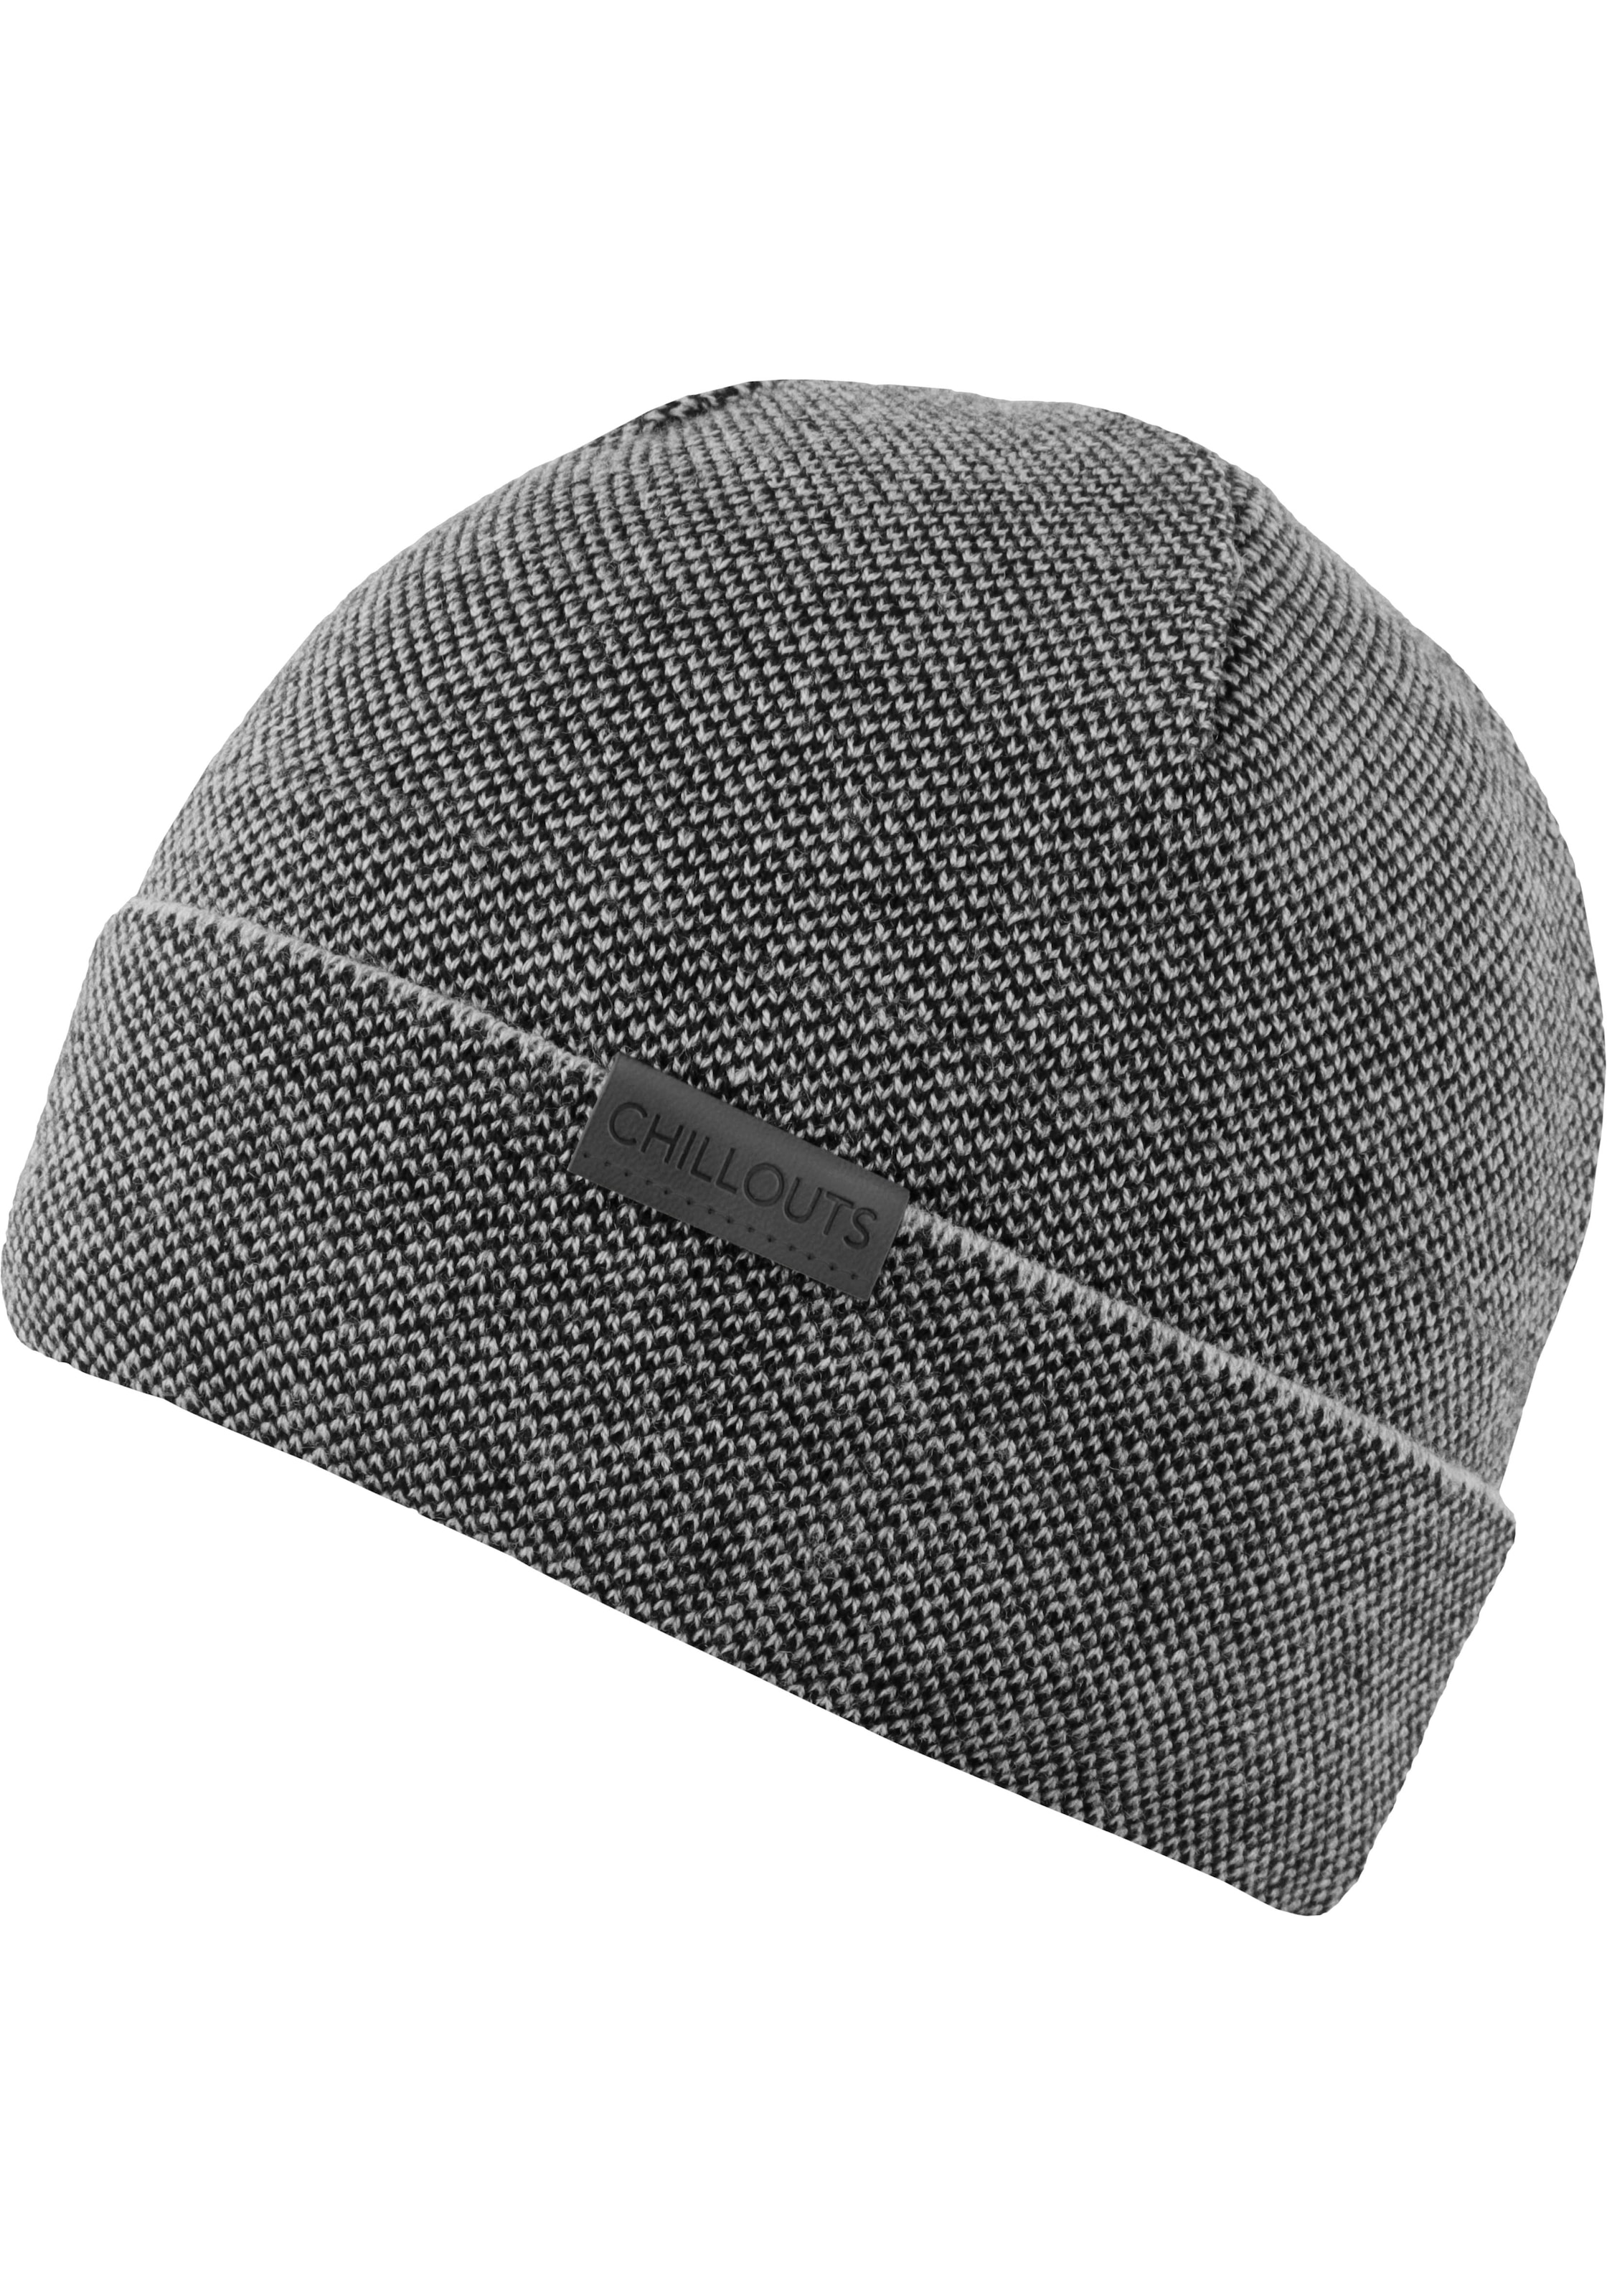 chillouts Strickmütze »Kilian Hat« online shoppen bei OTTO | Strickmützen